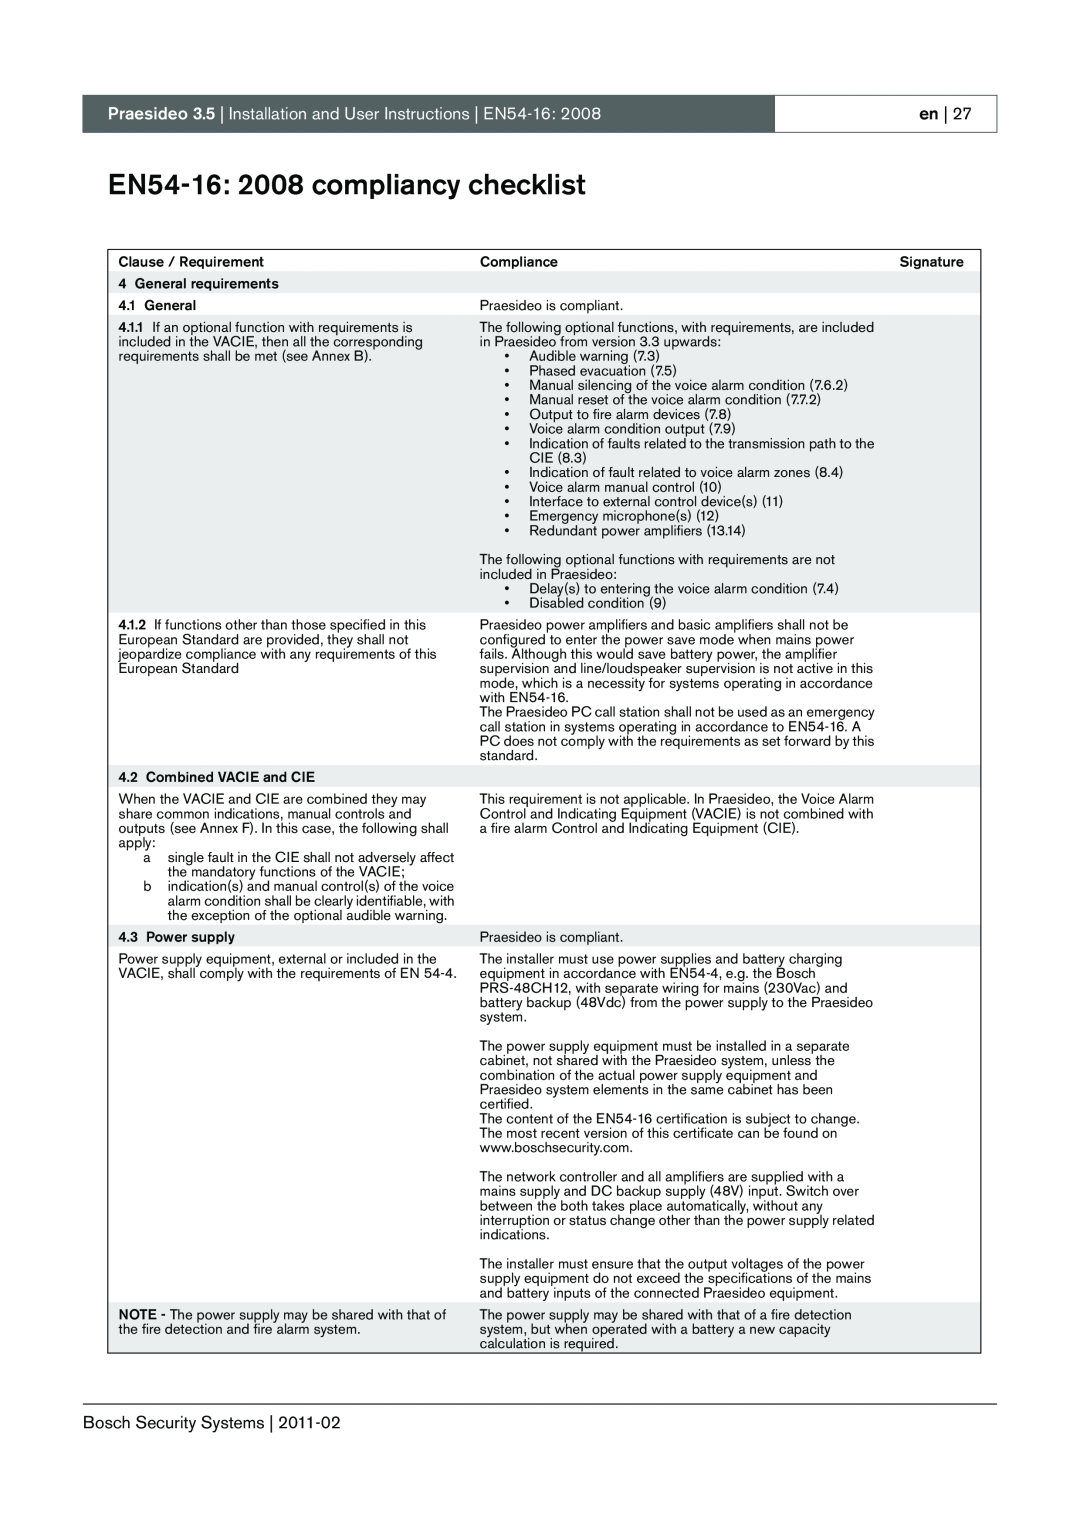 Bosch Appliances 3.5 manual EN54-16:2008 compliancy checklist 